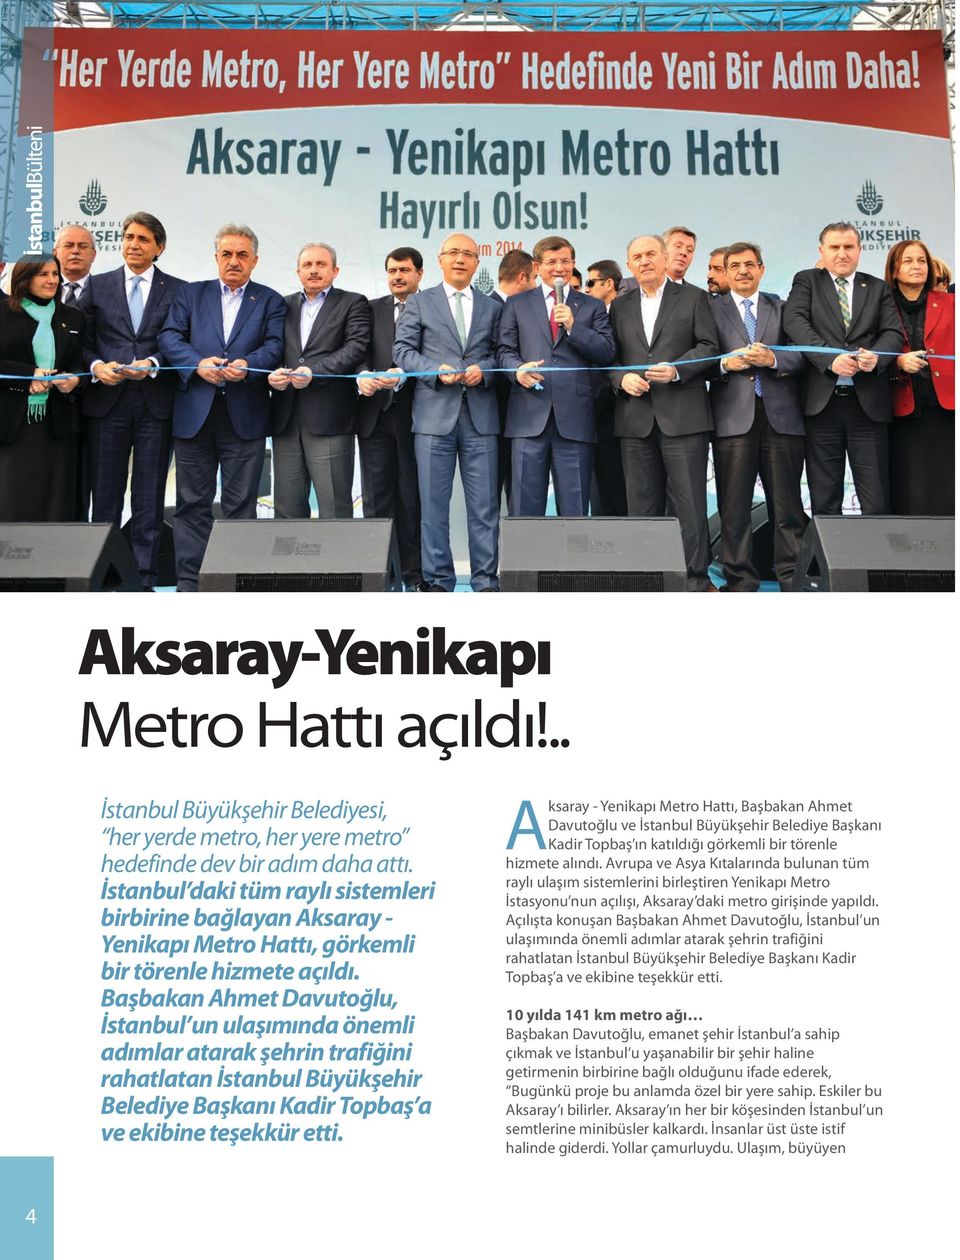 Başbakan Ahmet Davutoğlu, İstanbul un ulaşımında önemli adımlar atarak şehrin trafiğini rahatlatan İstanbul Büyükşehir Belediye Başkanı Kadir Topbaş a ve ekibine teşekkür etti.